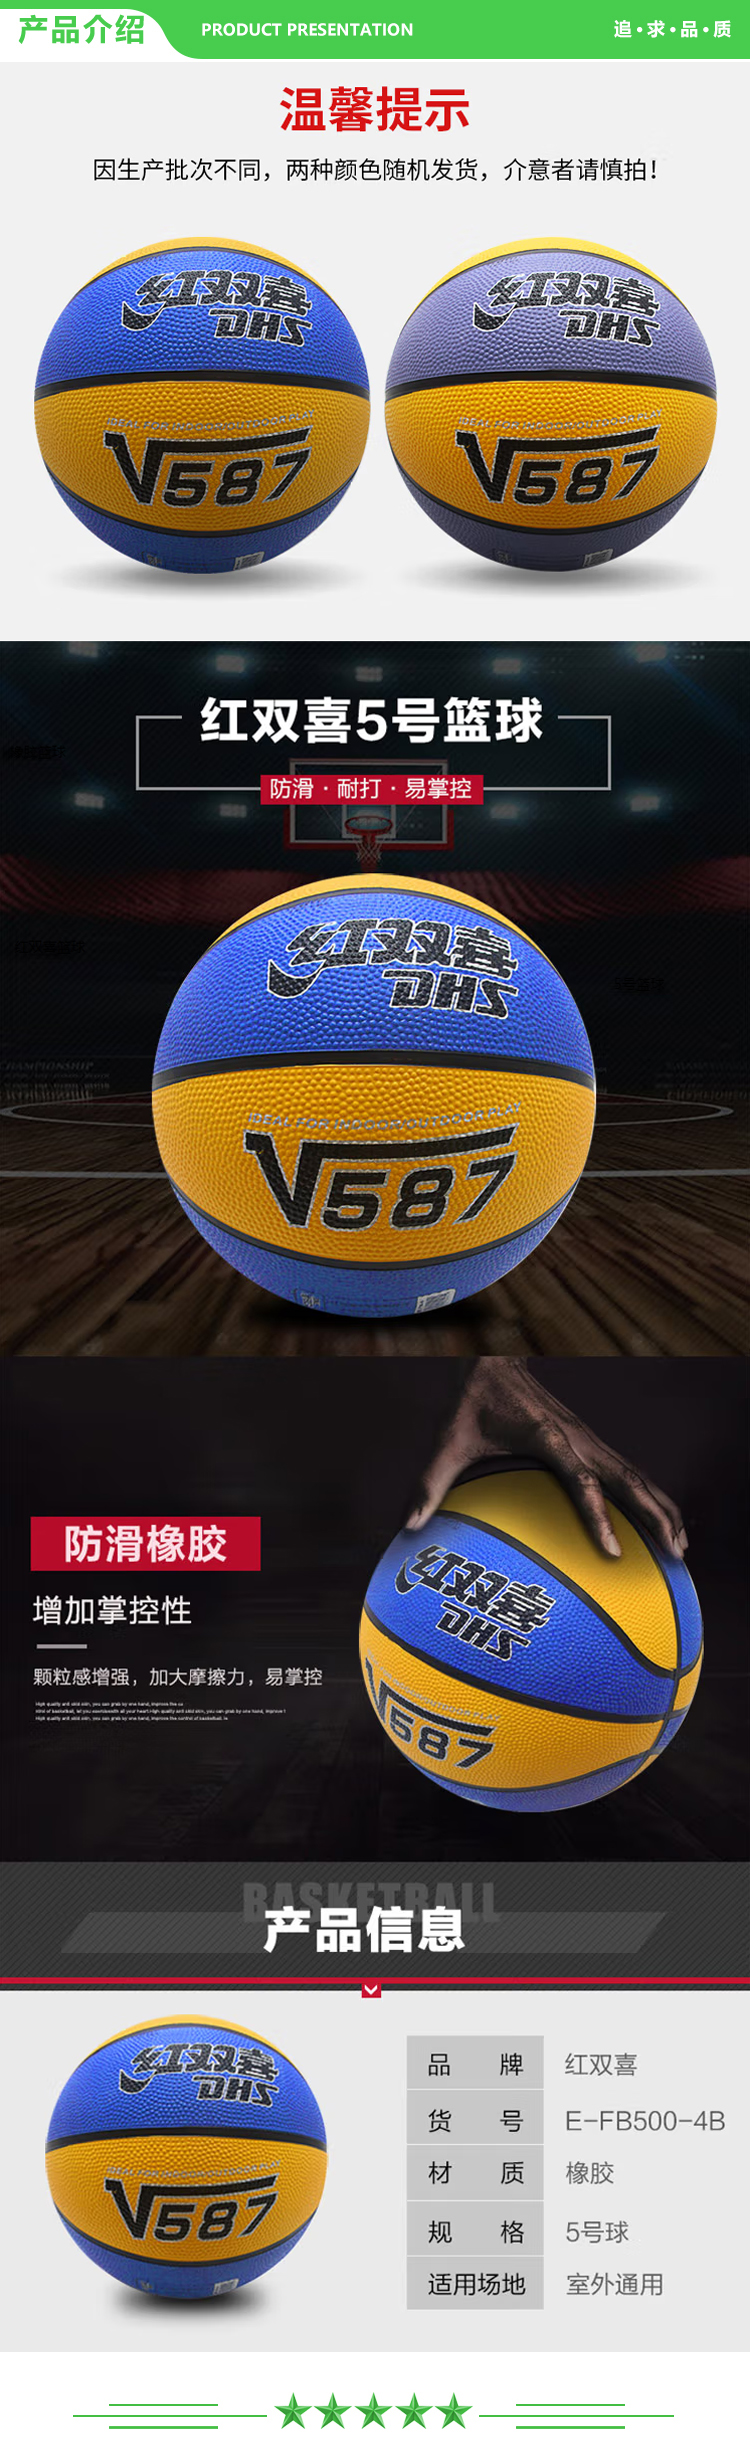 红双喜 DHS E-FB500-4B 儿童5号篮球橡胶小孩学生蓝球颗粒易抓握室外耐玩 .jpg